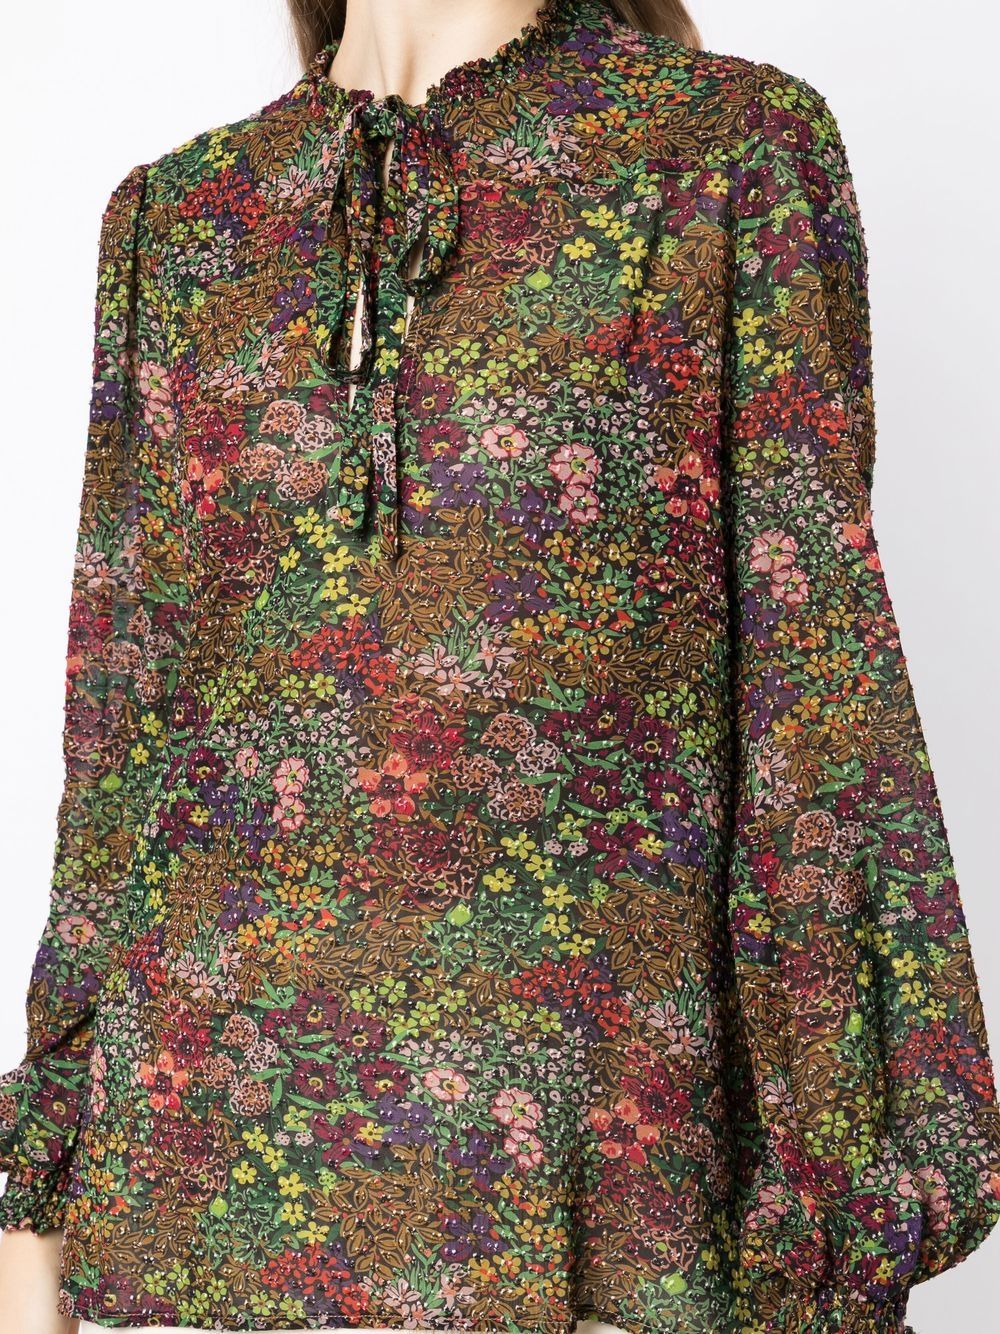 PIERRE-LOUIS MASCIA, Beige Women's Floral Shirts & Blouses